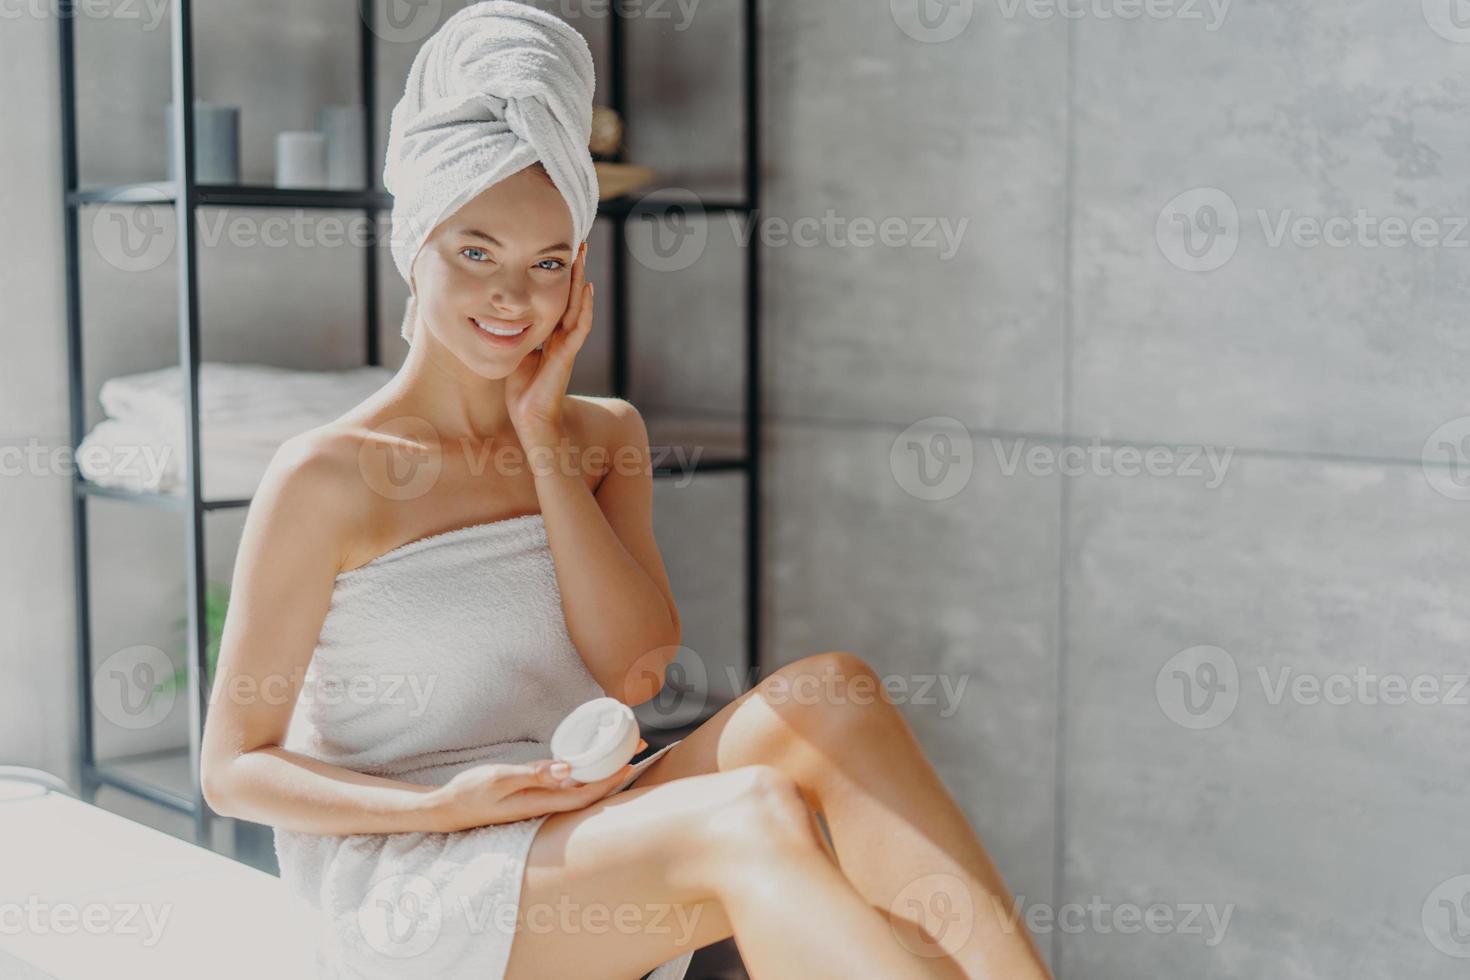 la foto di una giovane donna europea sorridente tocca la guancia, applica una crema idratante sul viso, ha un'espressione felice, avvolta in un morbido asciugamano da bagno, posa in bagno. concetto di routine di igiene di bellezza